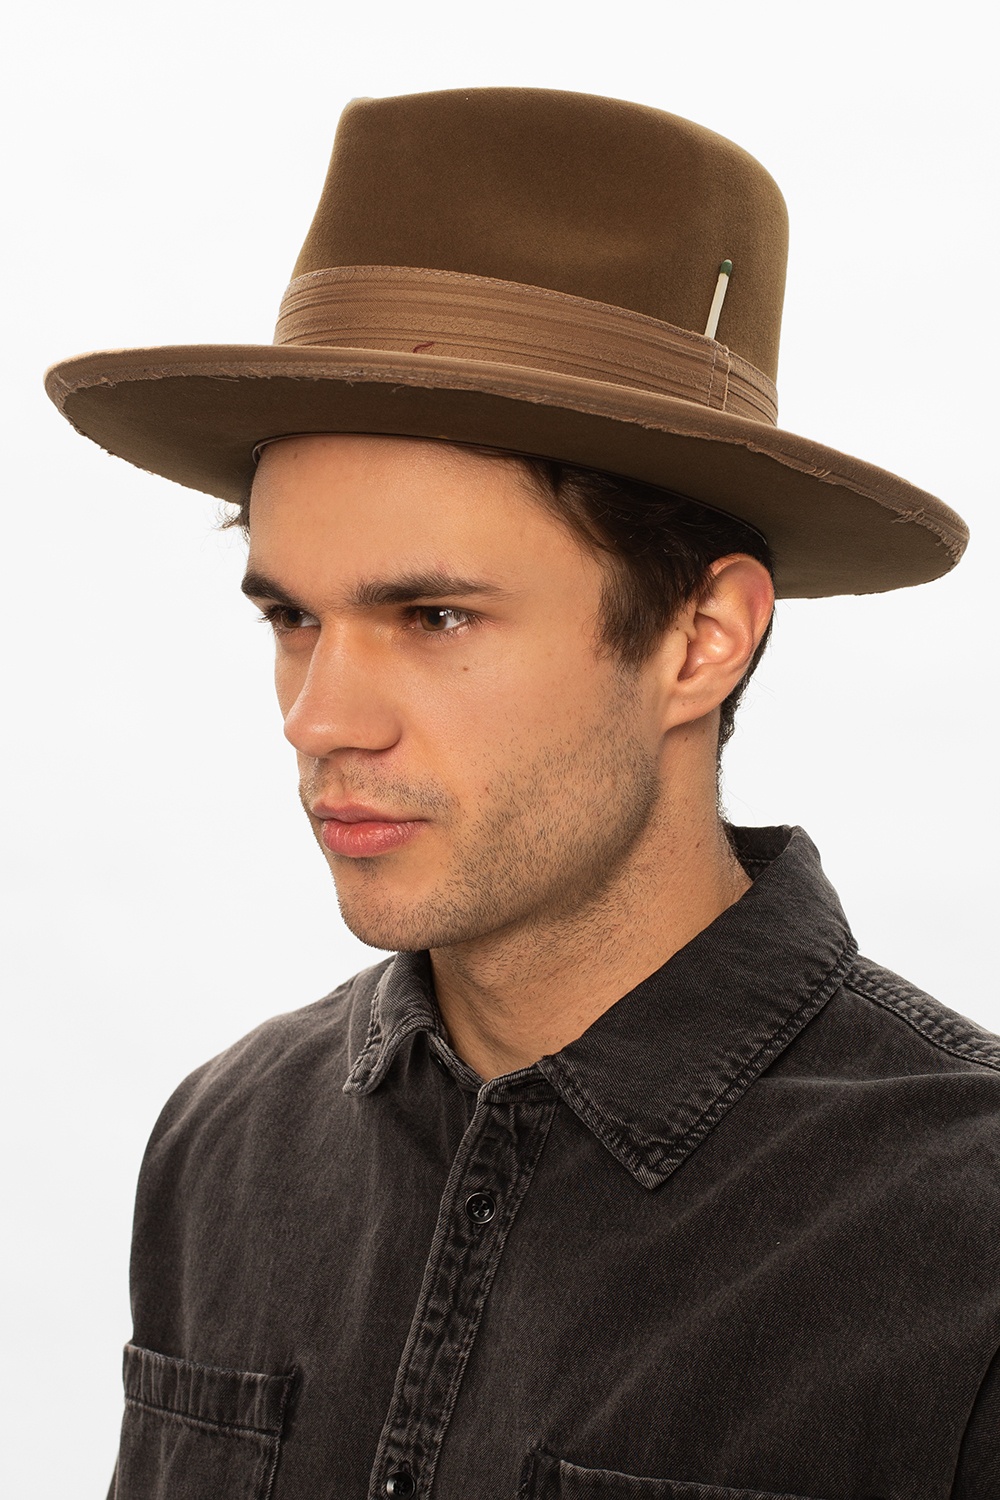 Nick Fouquet ‘Paris, Texas’ hat